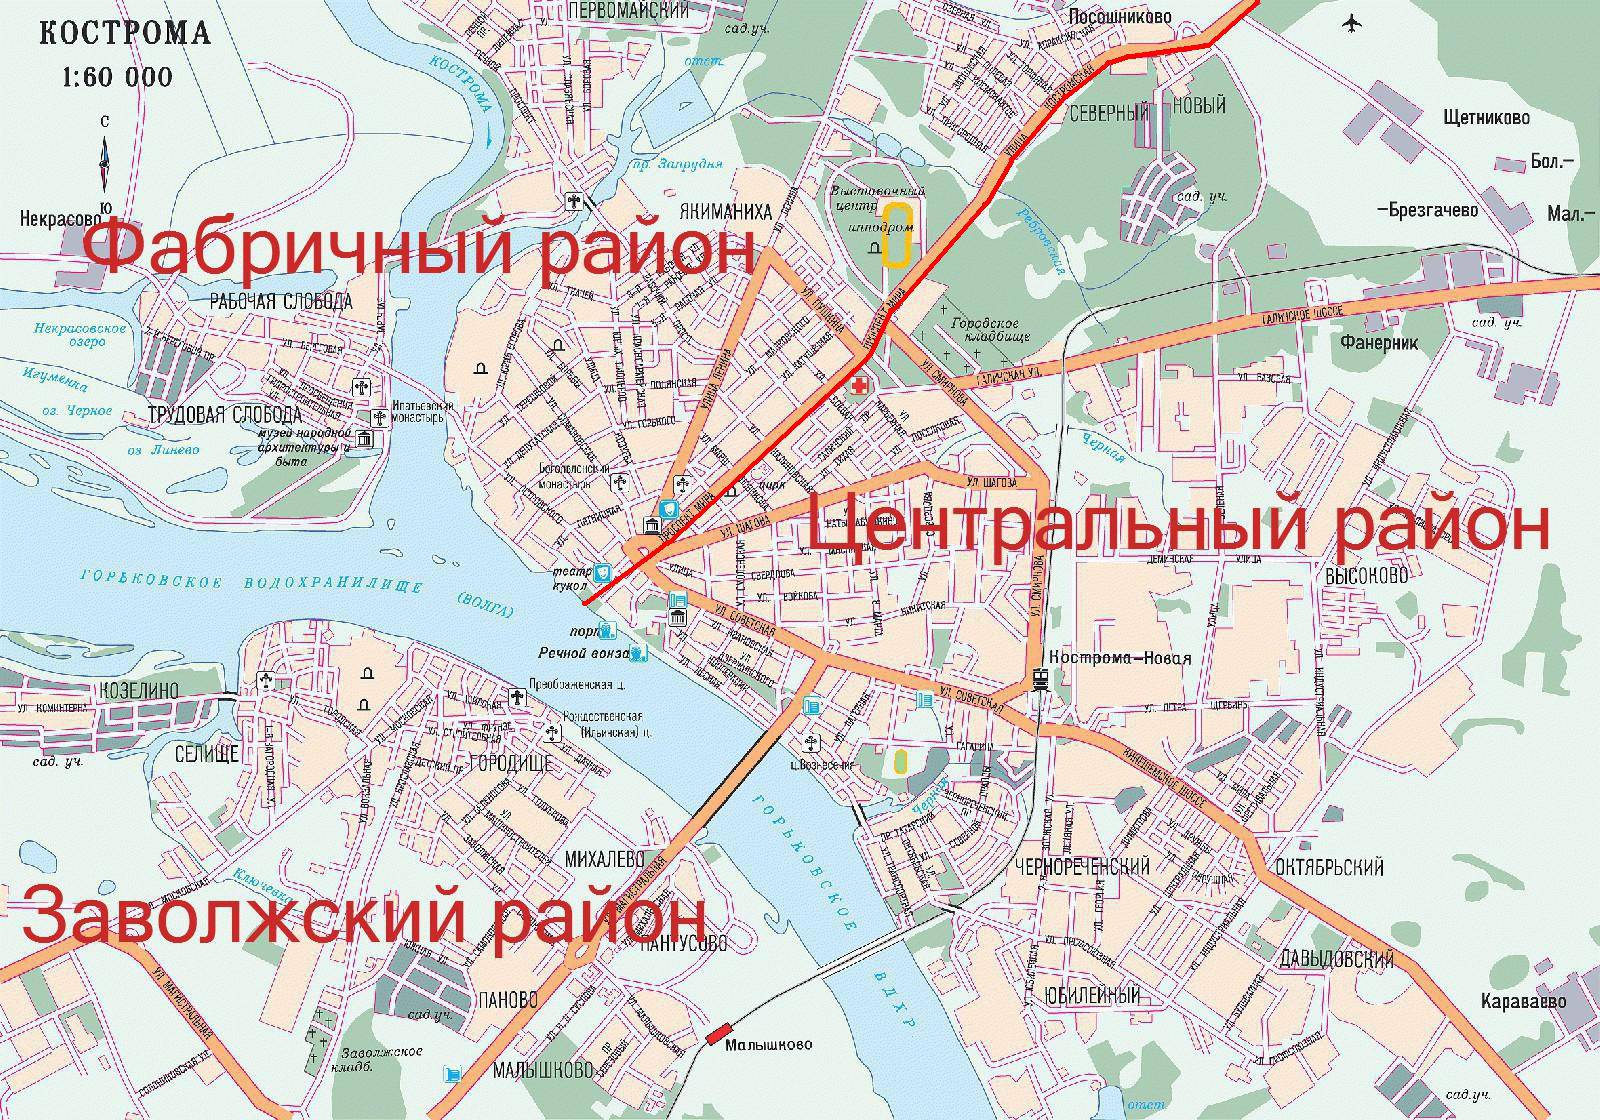 Карта давыдовский кострома